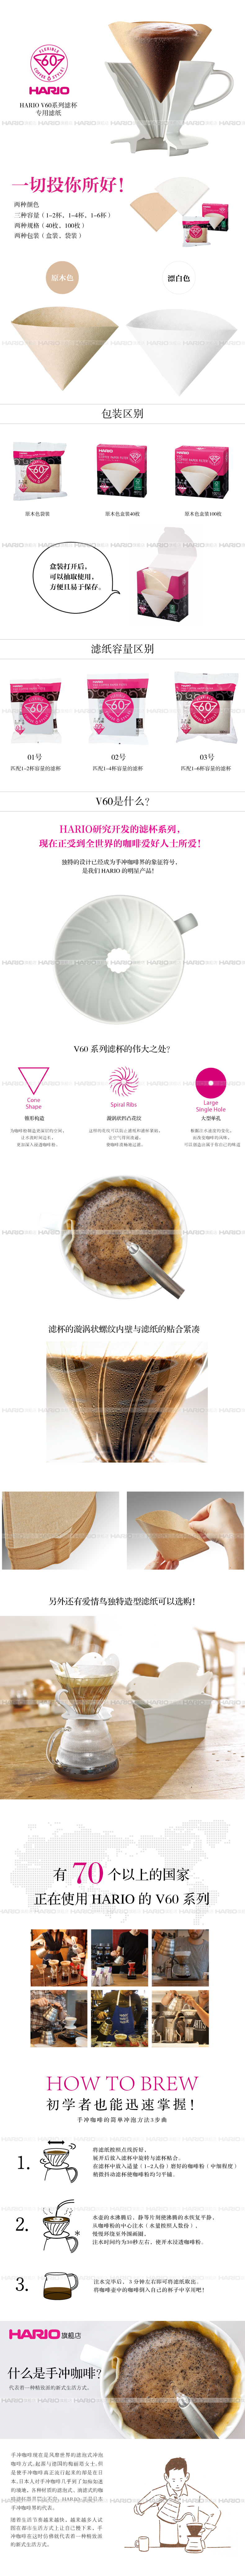 HARIO 日本进口 V60滴漏式咖啡过滤纸